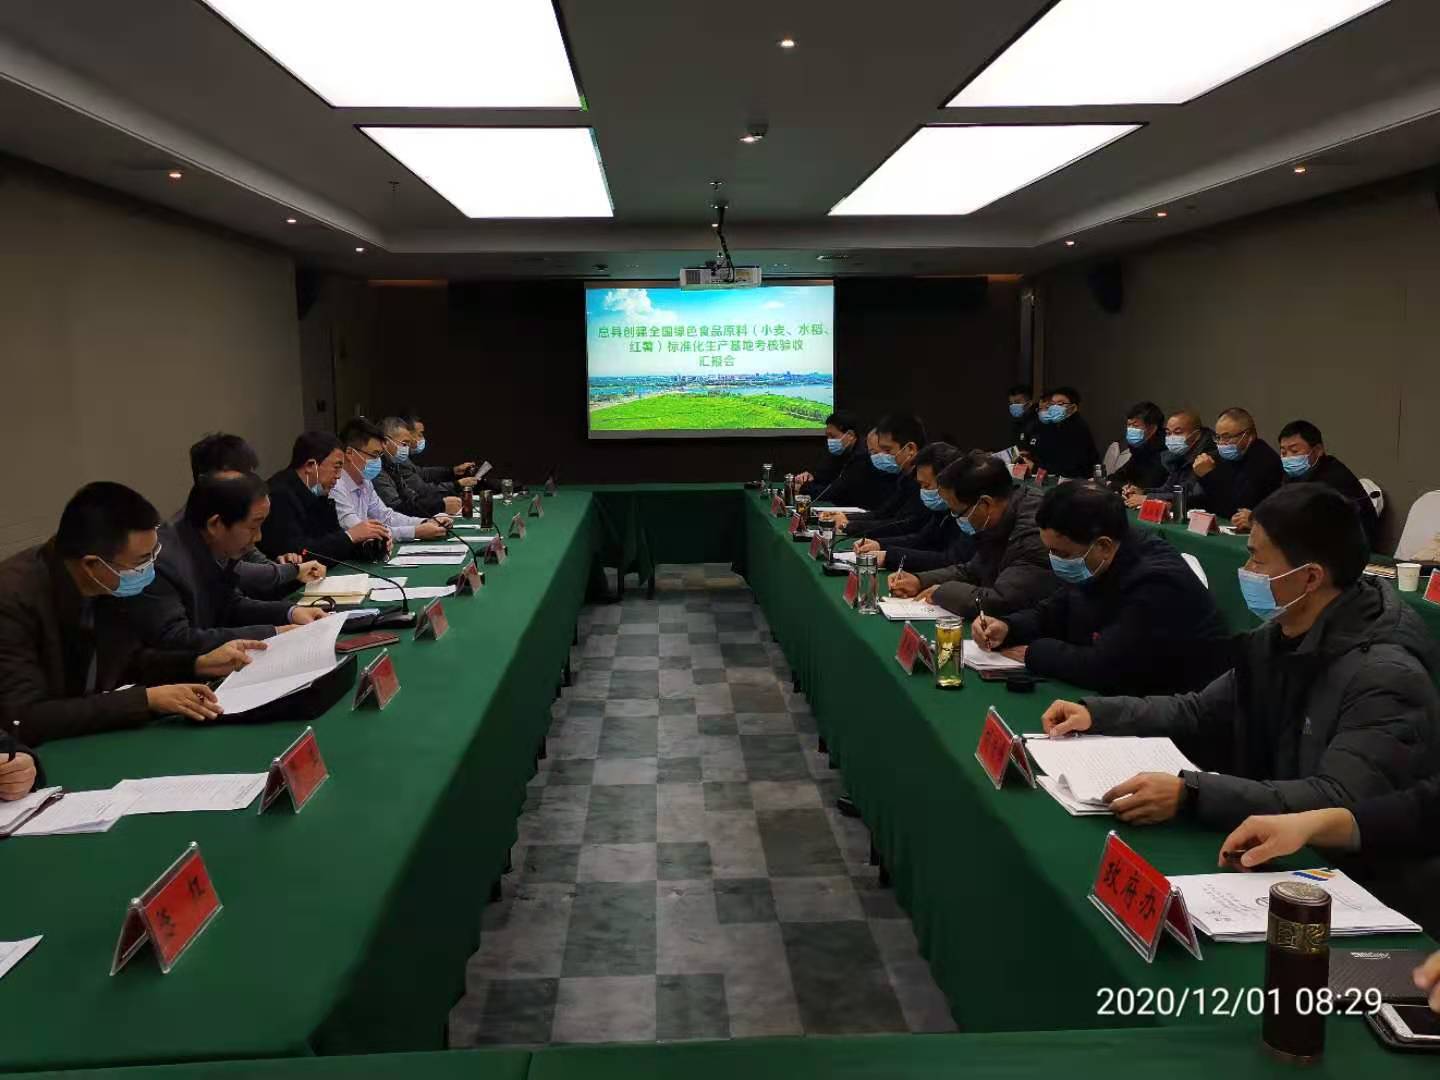 息县、舞阳县全国绿色食品原料标准化生产基地创建工作双双通过专家验收